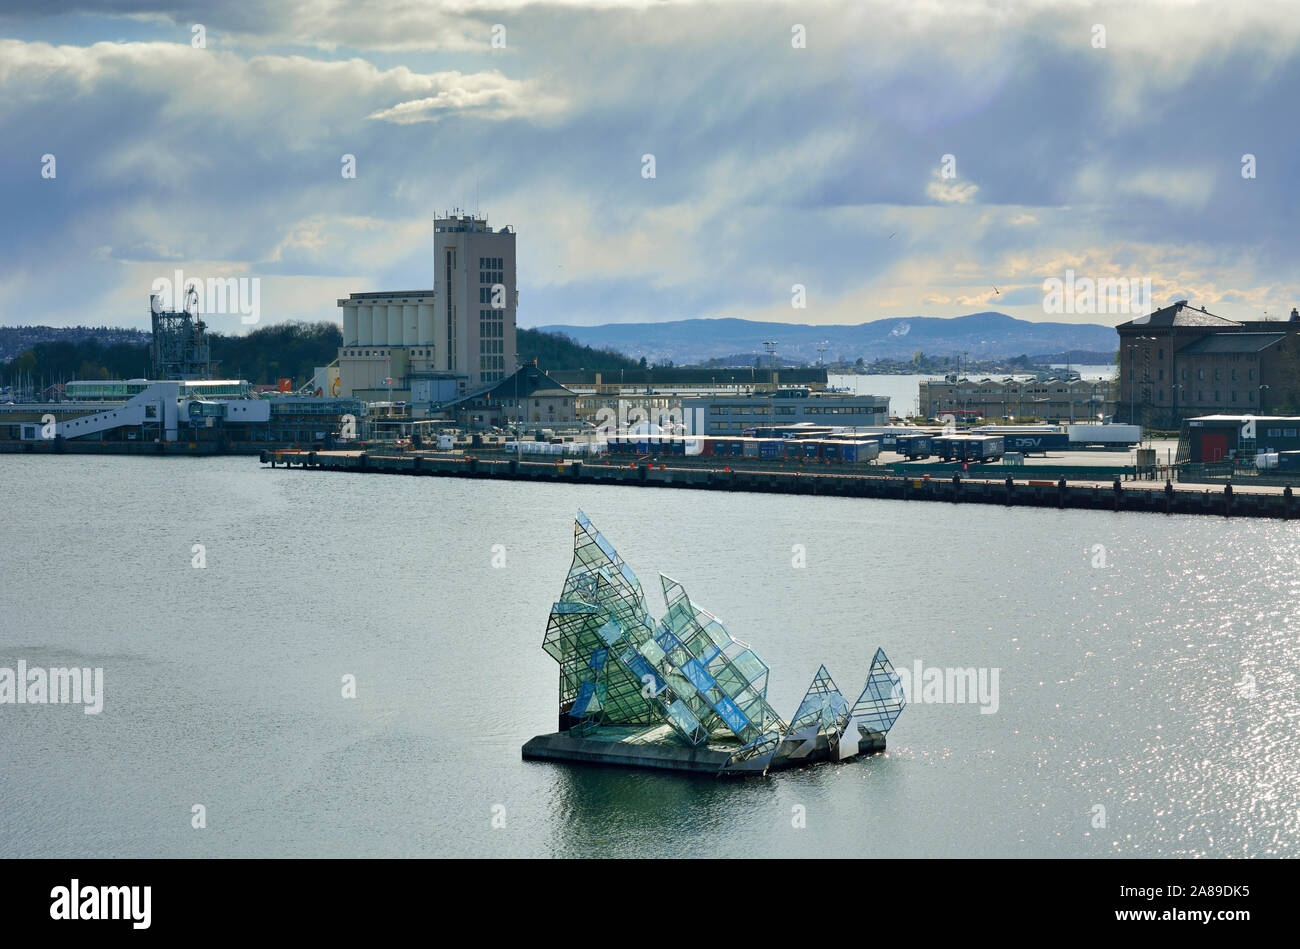 La scultura, chiamato lei risiede, dall'artista Monica Bonvicini, sembra galleggiare sulle acque del Fiordo di Oslo. Norvegia Foto Stock